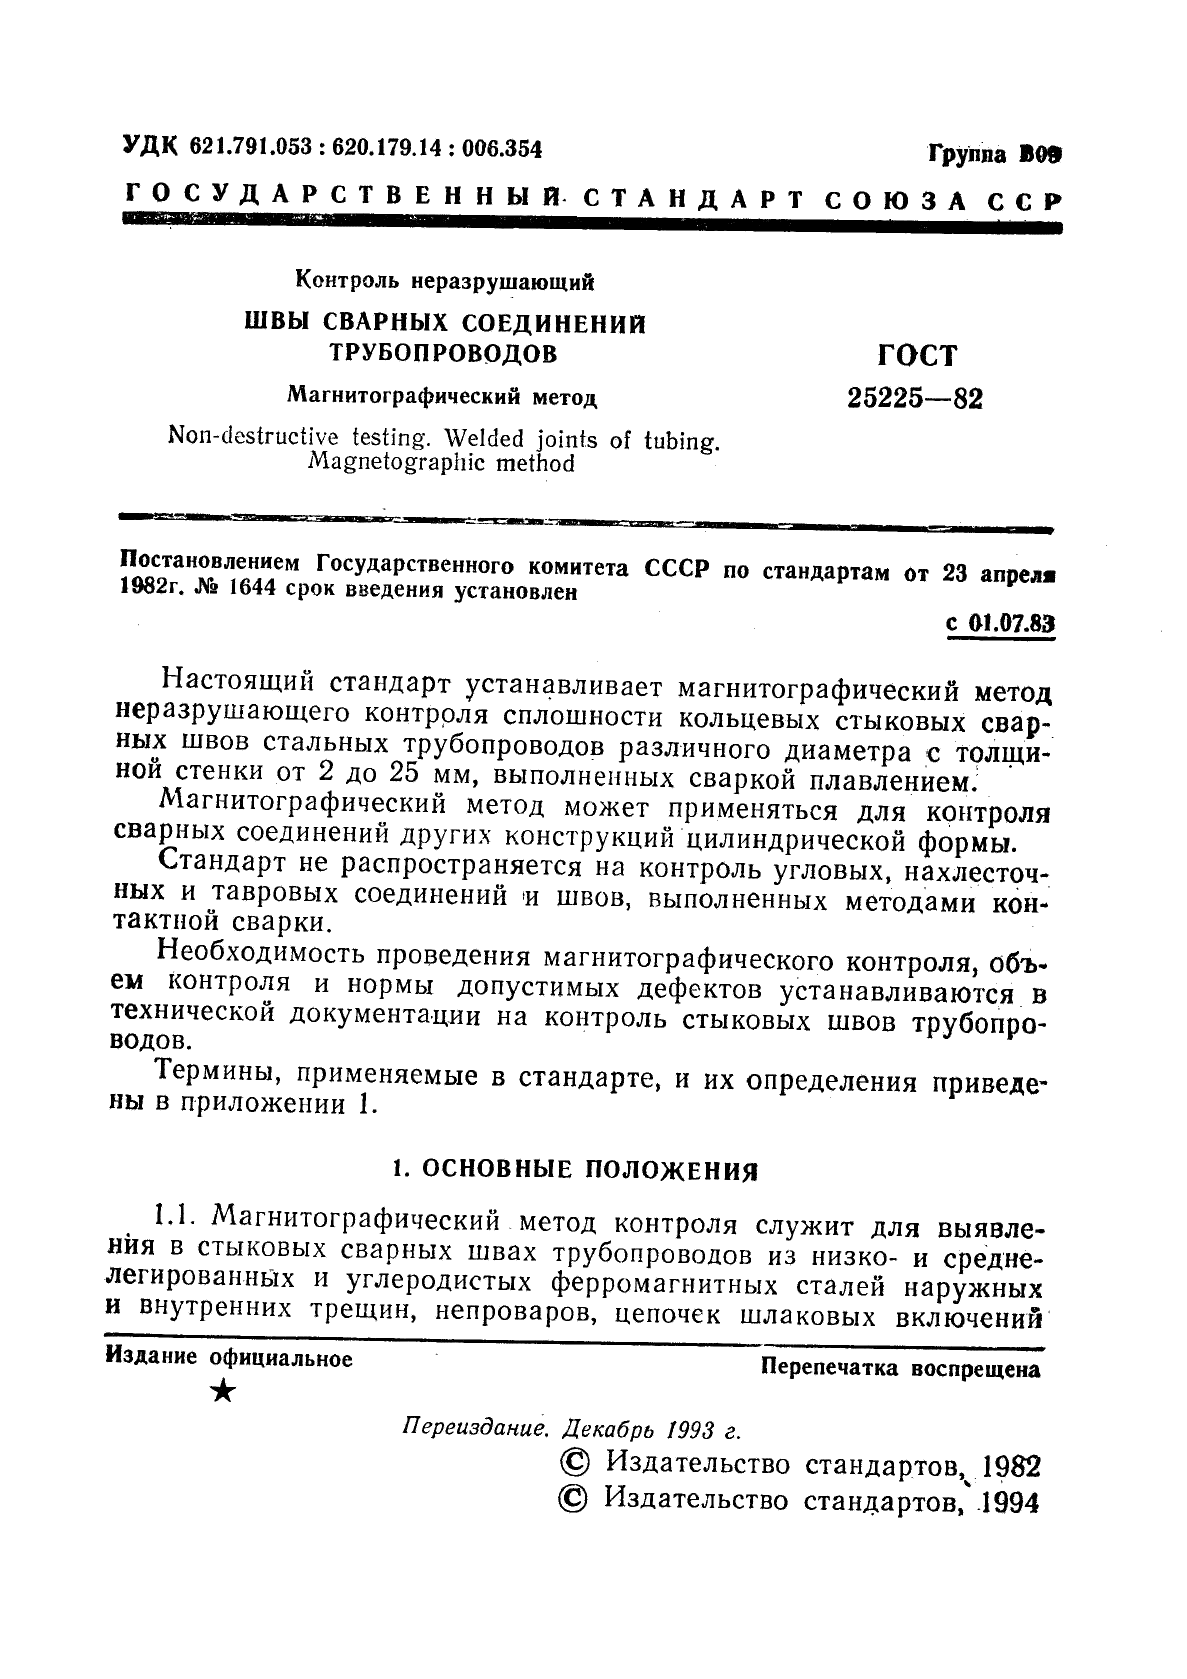 ГОСТ 25225-82 Контроль неразрушающий. Швы сварных соединений трубопроводов. Магнитографический метод (фото 2 из 15)